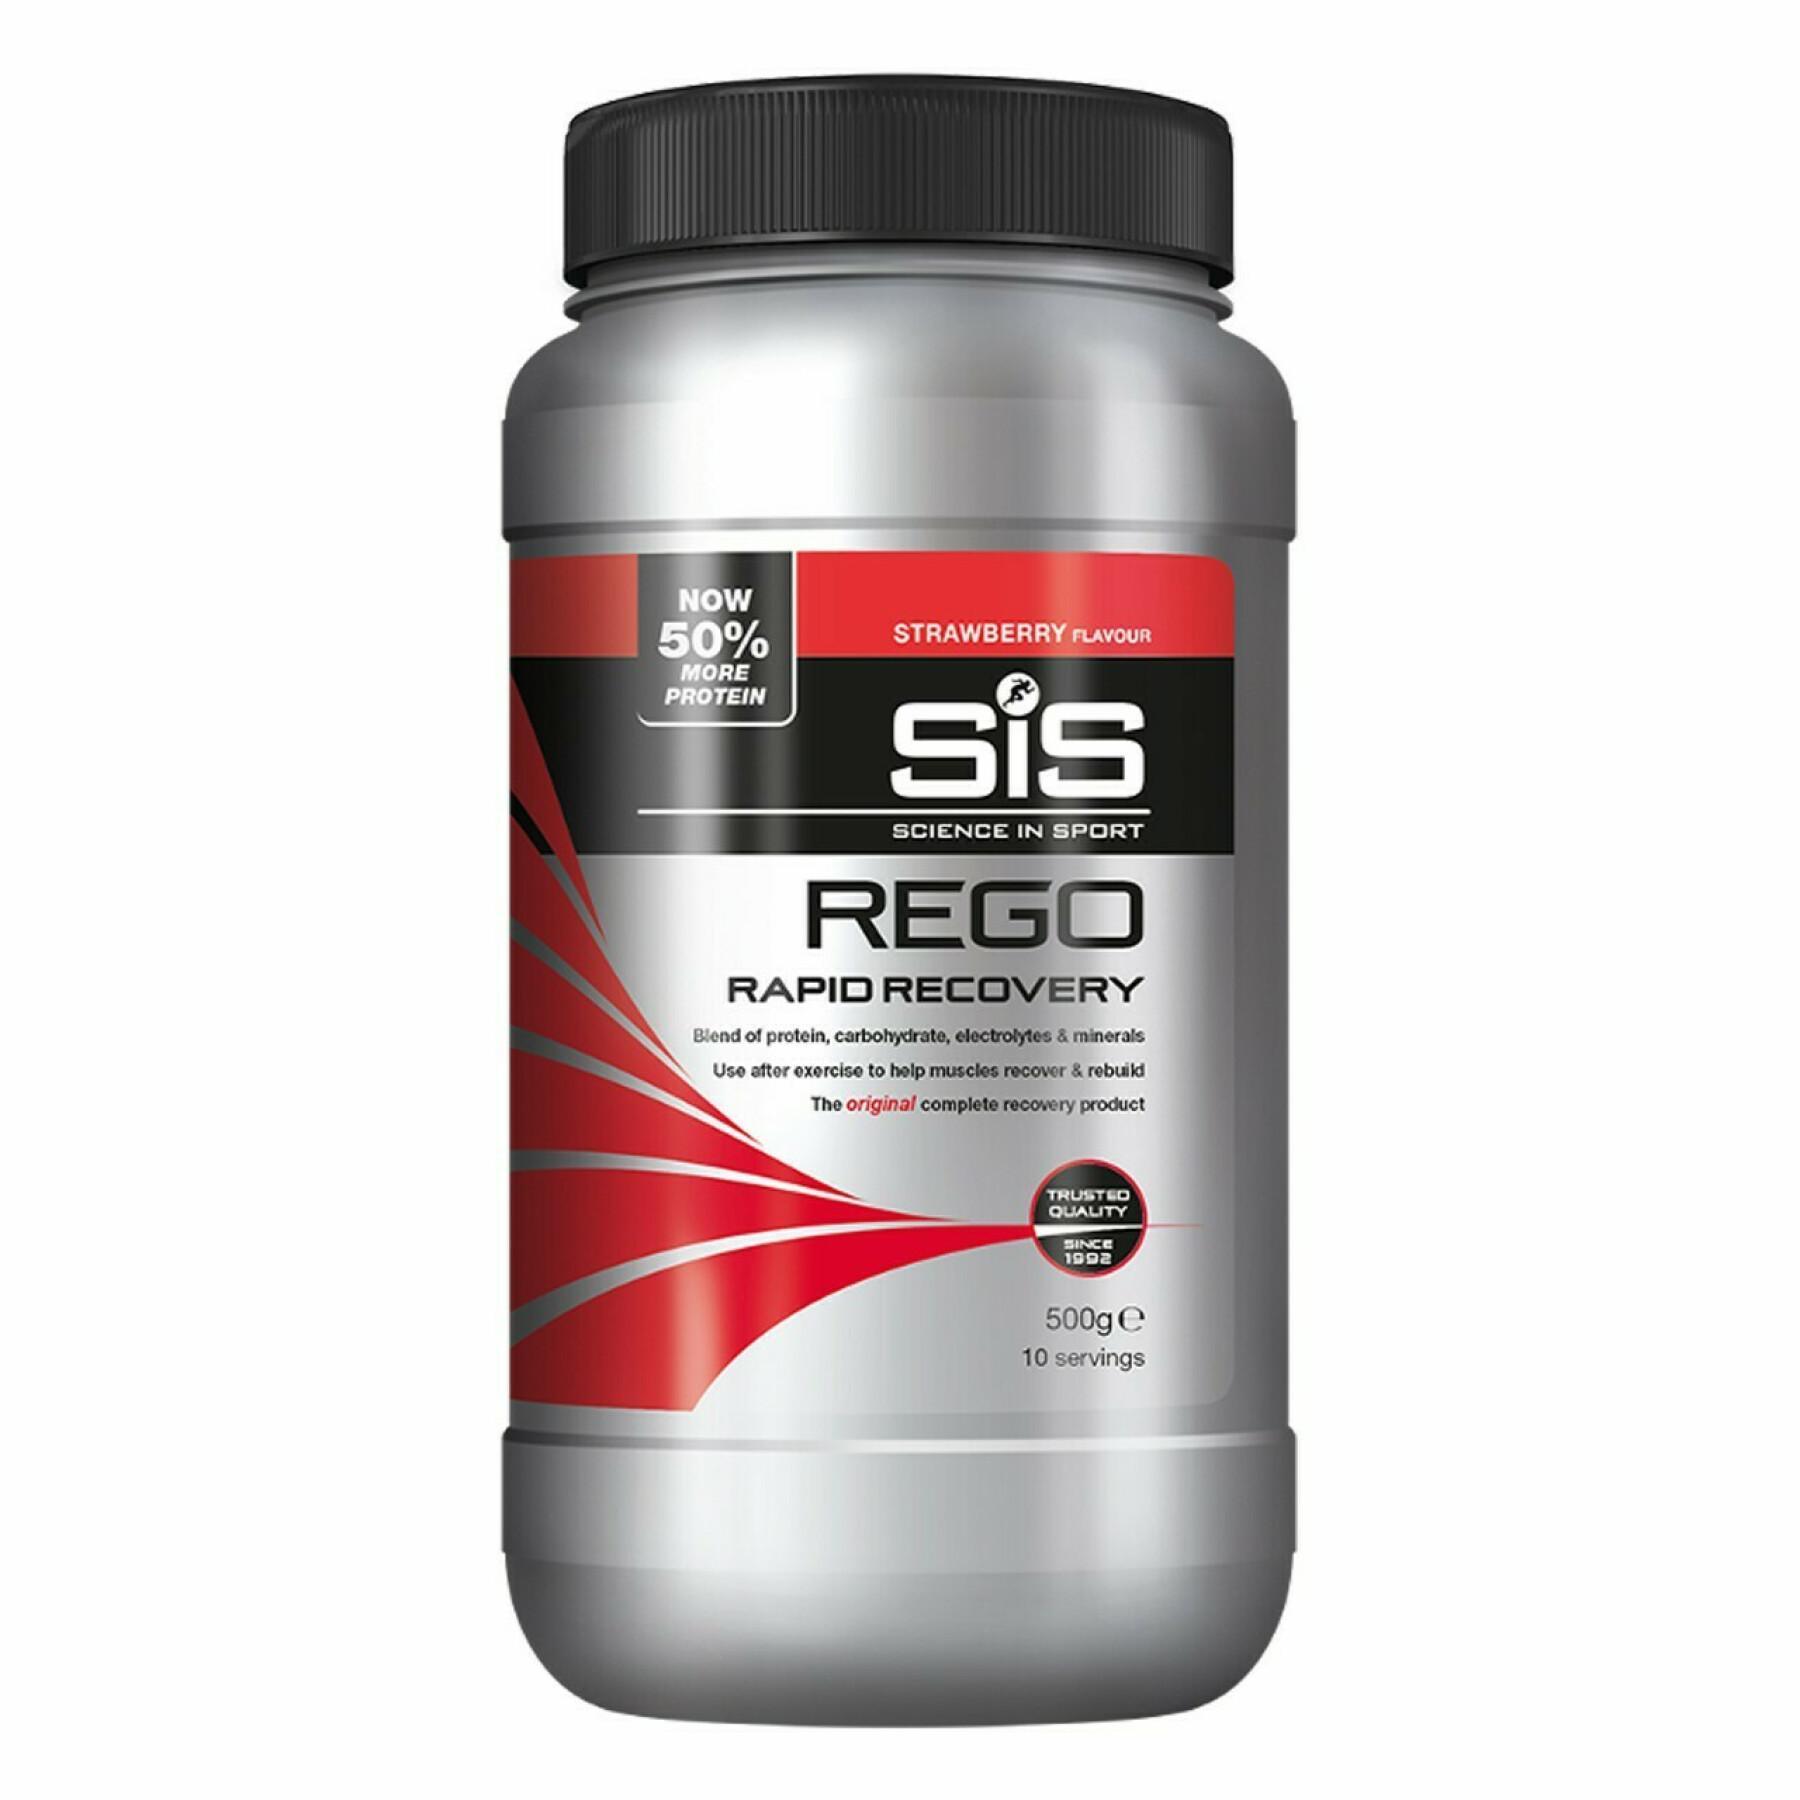 Napój regeneracyjny Science in Sport Rego Rapid Recovery - Strawberry - 500 g